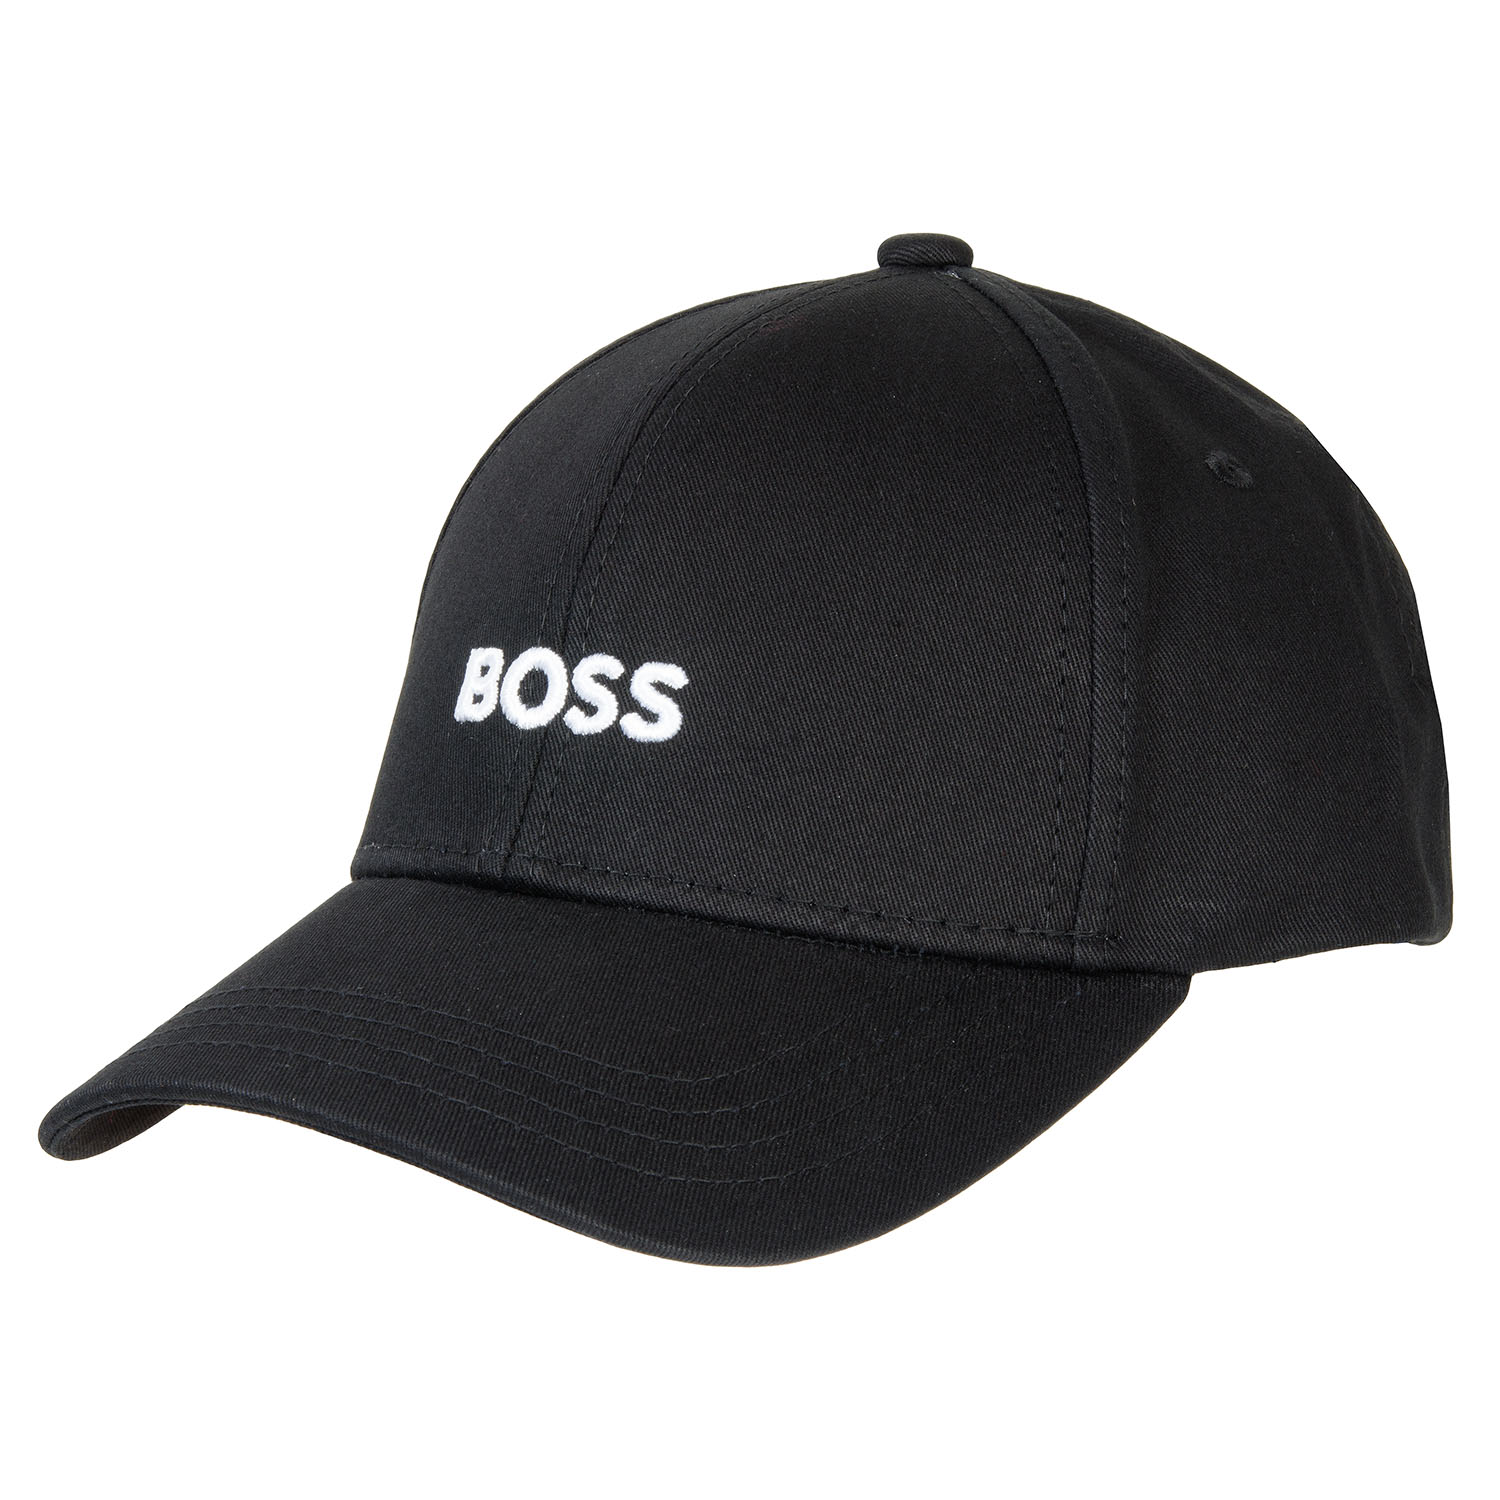 BOSS Zed Logo Baseball Cap Black 001 | Scottsdale Golf